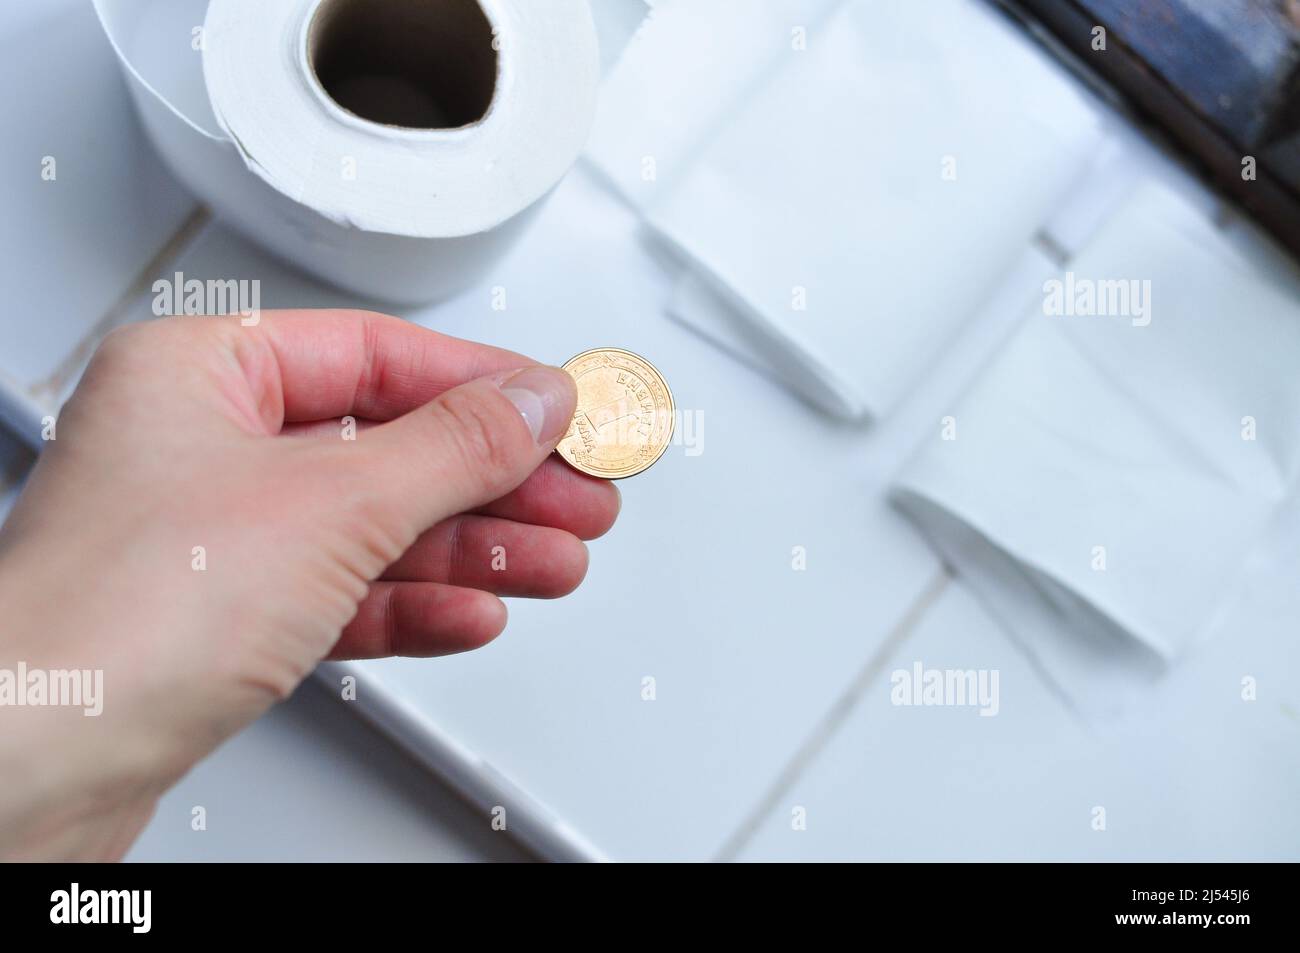 Rouleau de papier toilette blanc et pièce de monnaie hryvnia dorée  ukrainienne. Traduction de Ukrainien :One hryvnia, Ukraine Photo Stock -  Alamy